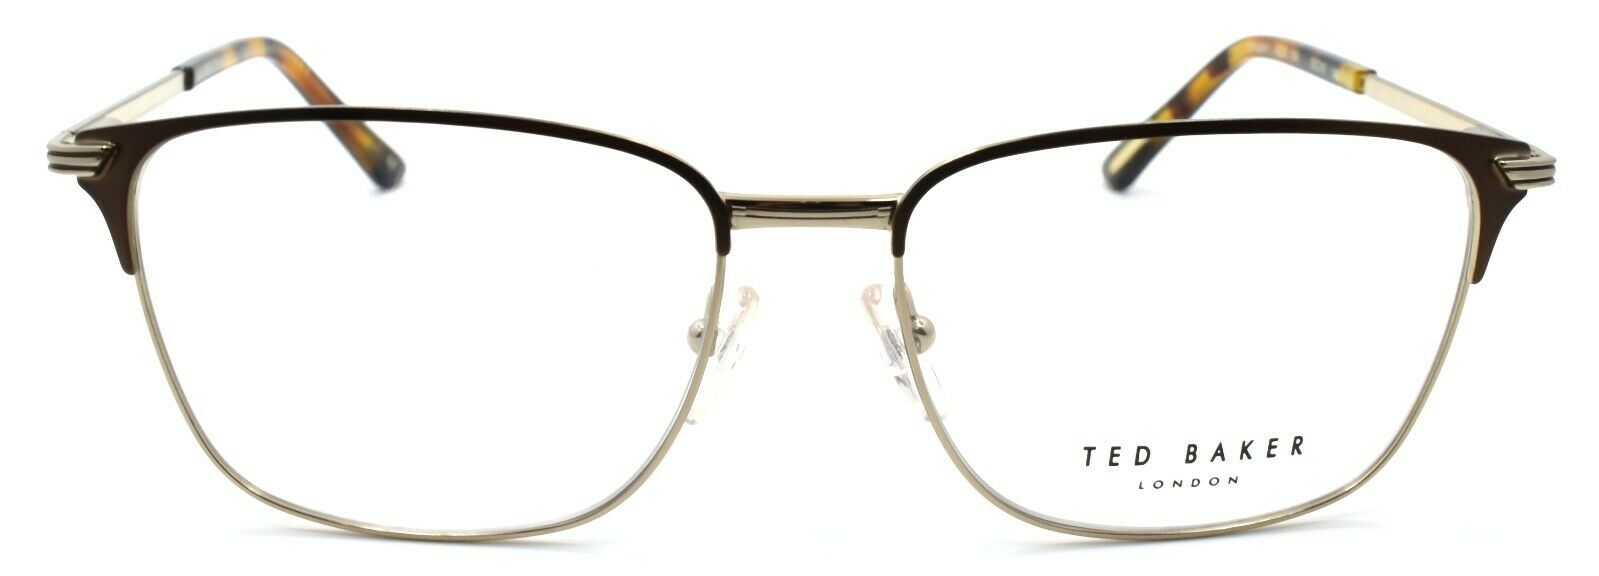 2-Ted Baker Smuggler 4235 104 Men's Eyeglasses Frames 55-16-140 Brown / Gold-4894327098682-IKSpecs